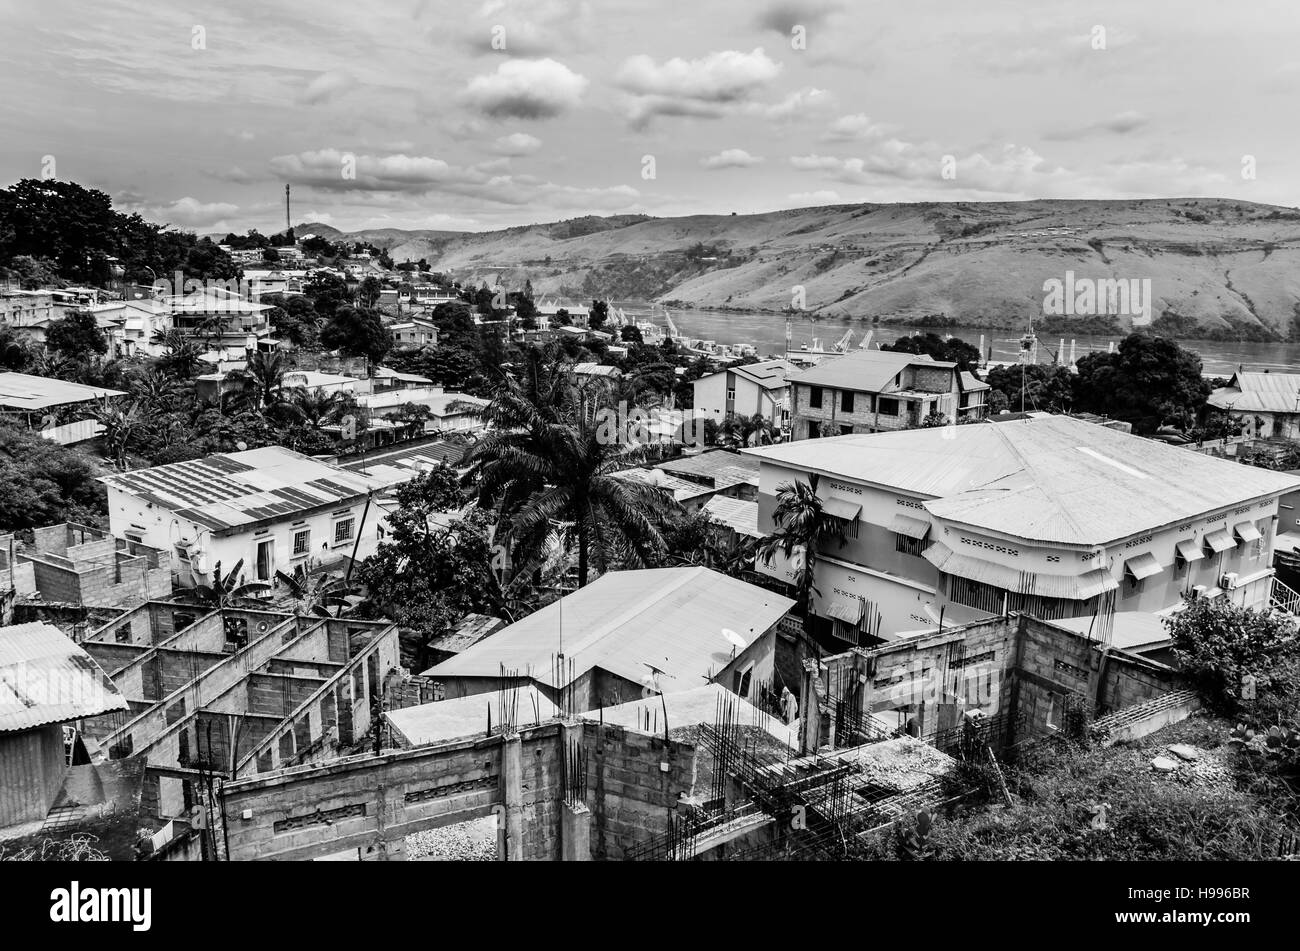 Der kongolesischen Stadt Matadi am Kongo-Fluss in schwarz und weiß. Die Stadt ist über mehrere Hügel mit sehr unterschiedlichen Architektur gebaut. Stockfoto